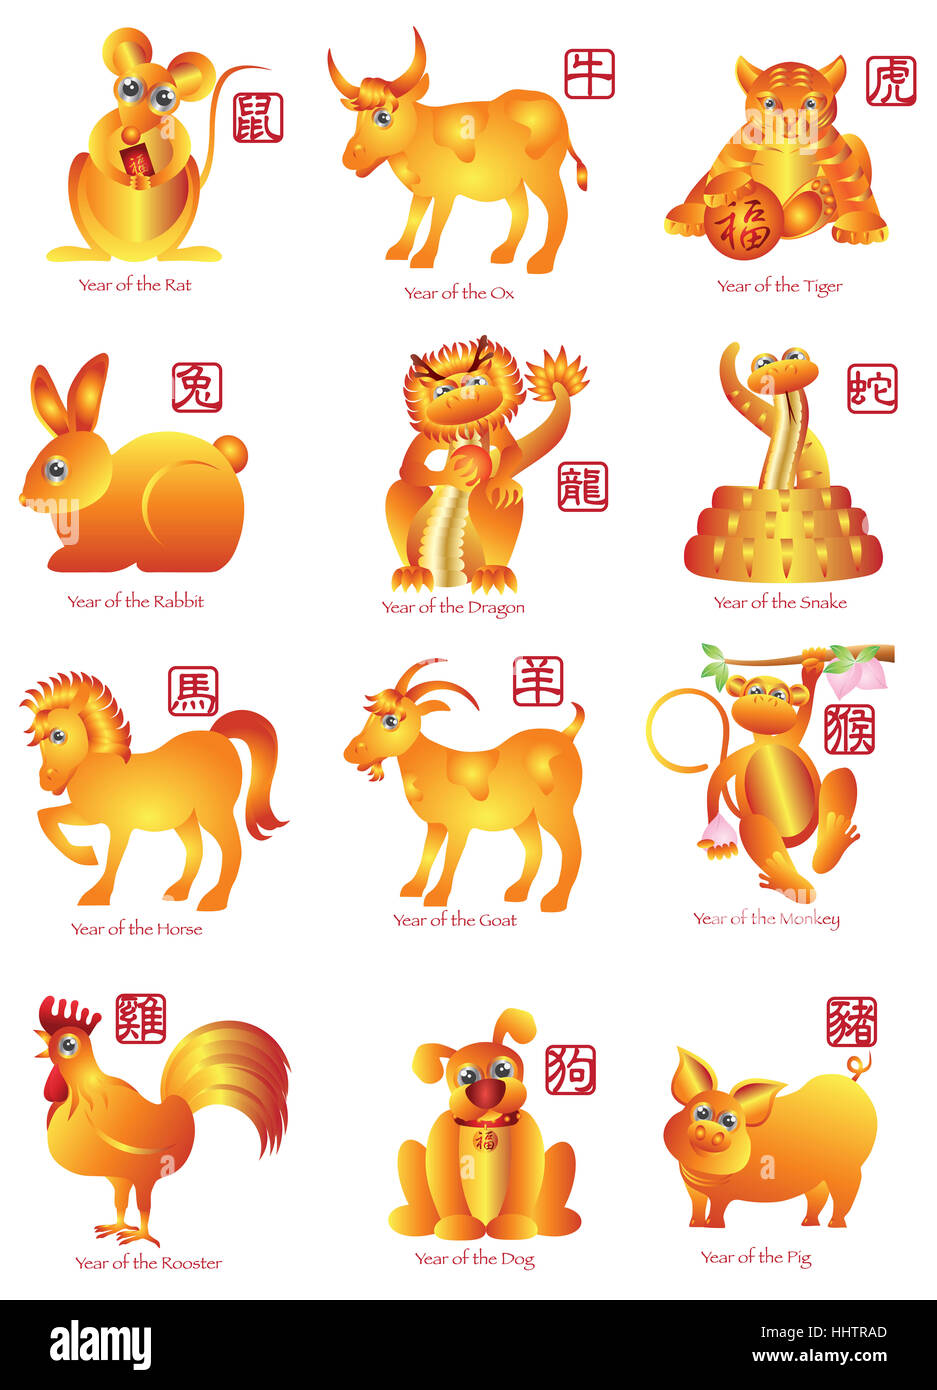 lunar new year animals dates